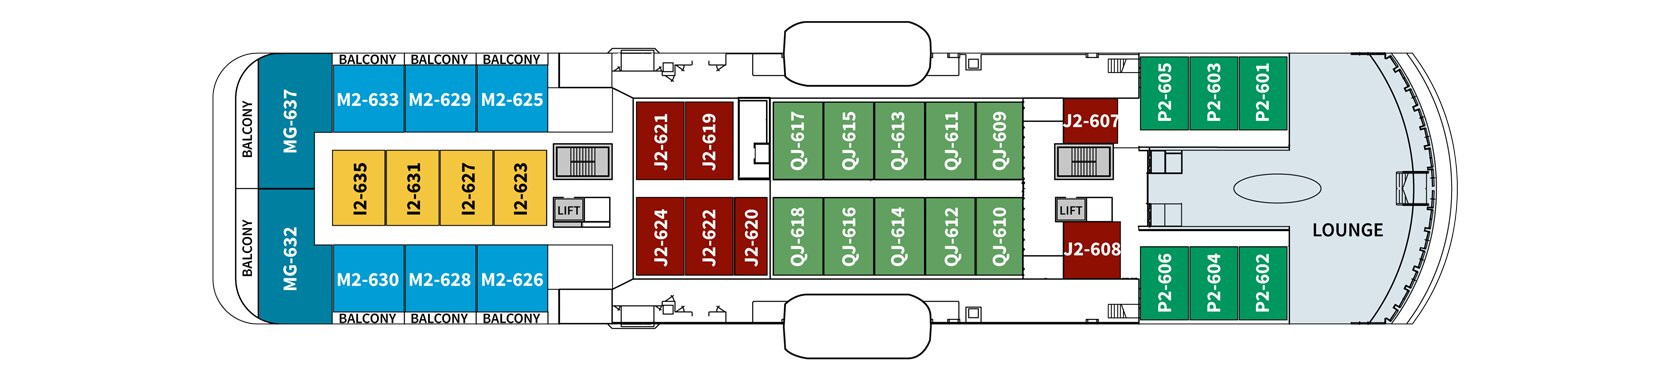 1548636378.624_d271_Hurtigruten MS Spitsbergen Deck Plans Deck 6.png